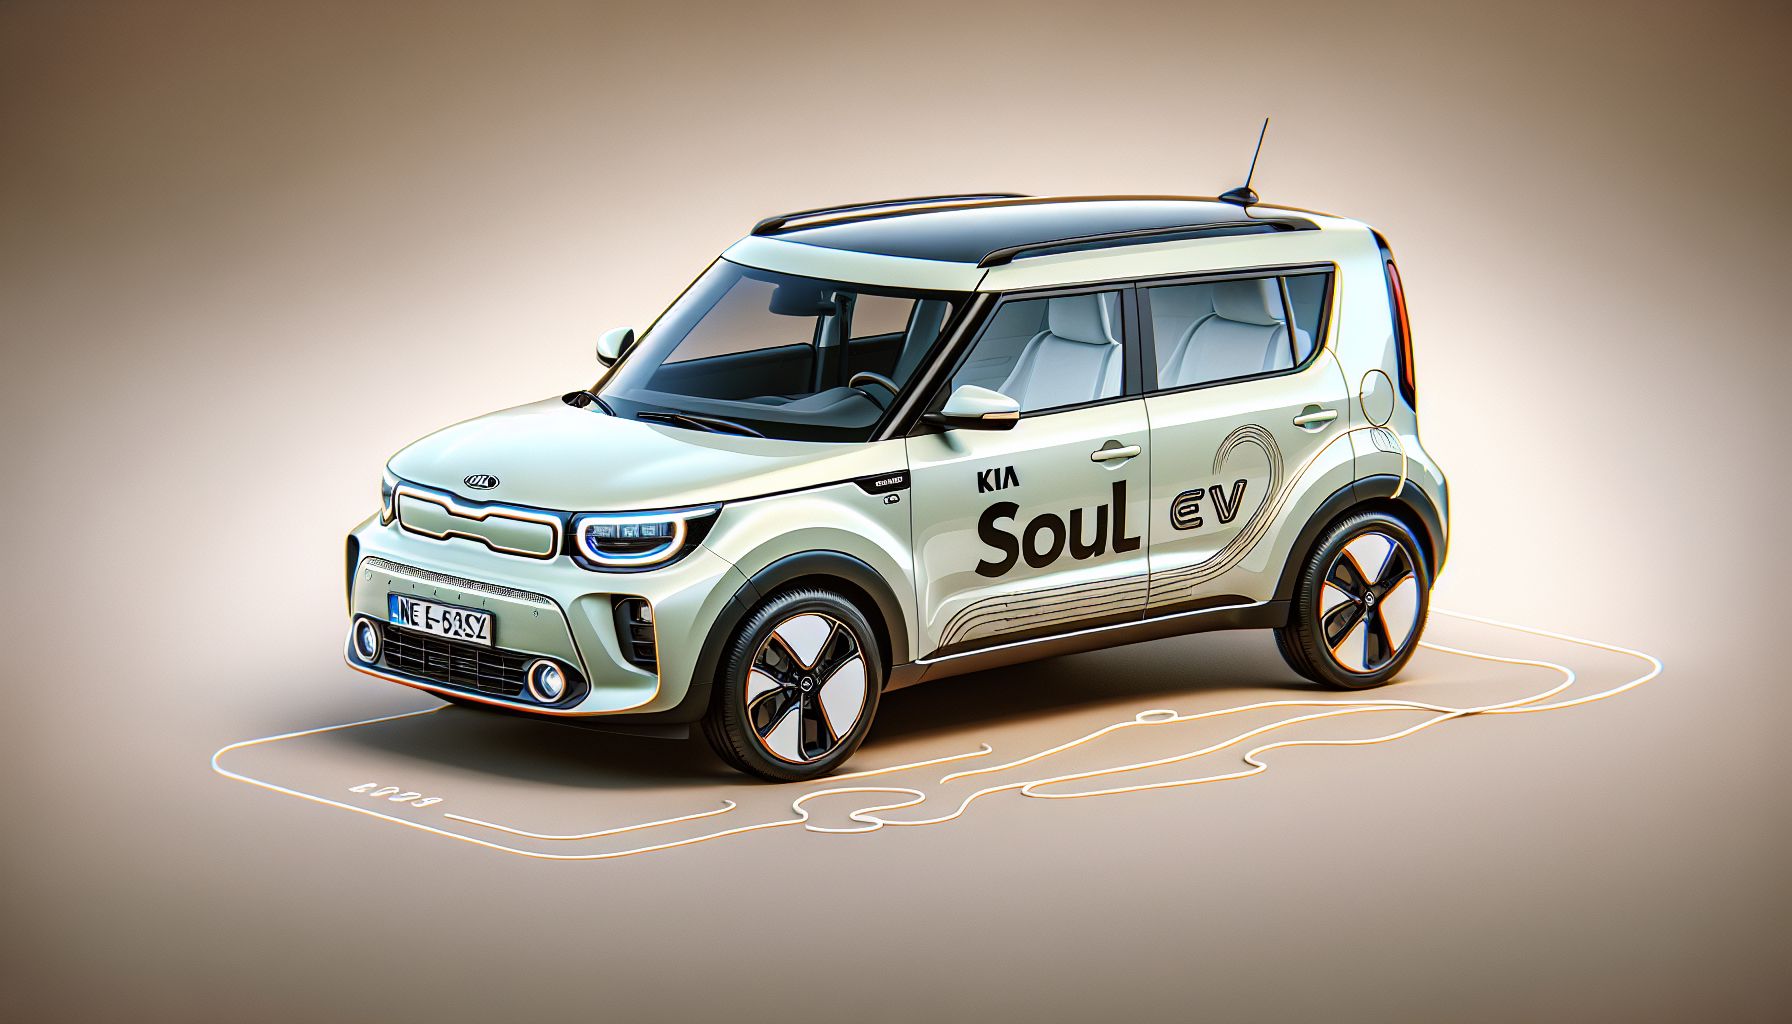 Kia Soul EV: a unique vision of an electric car